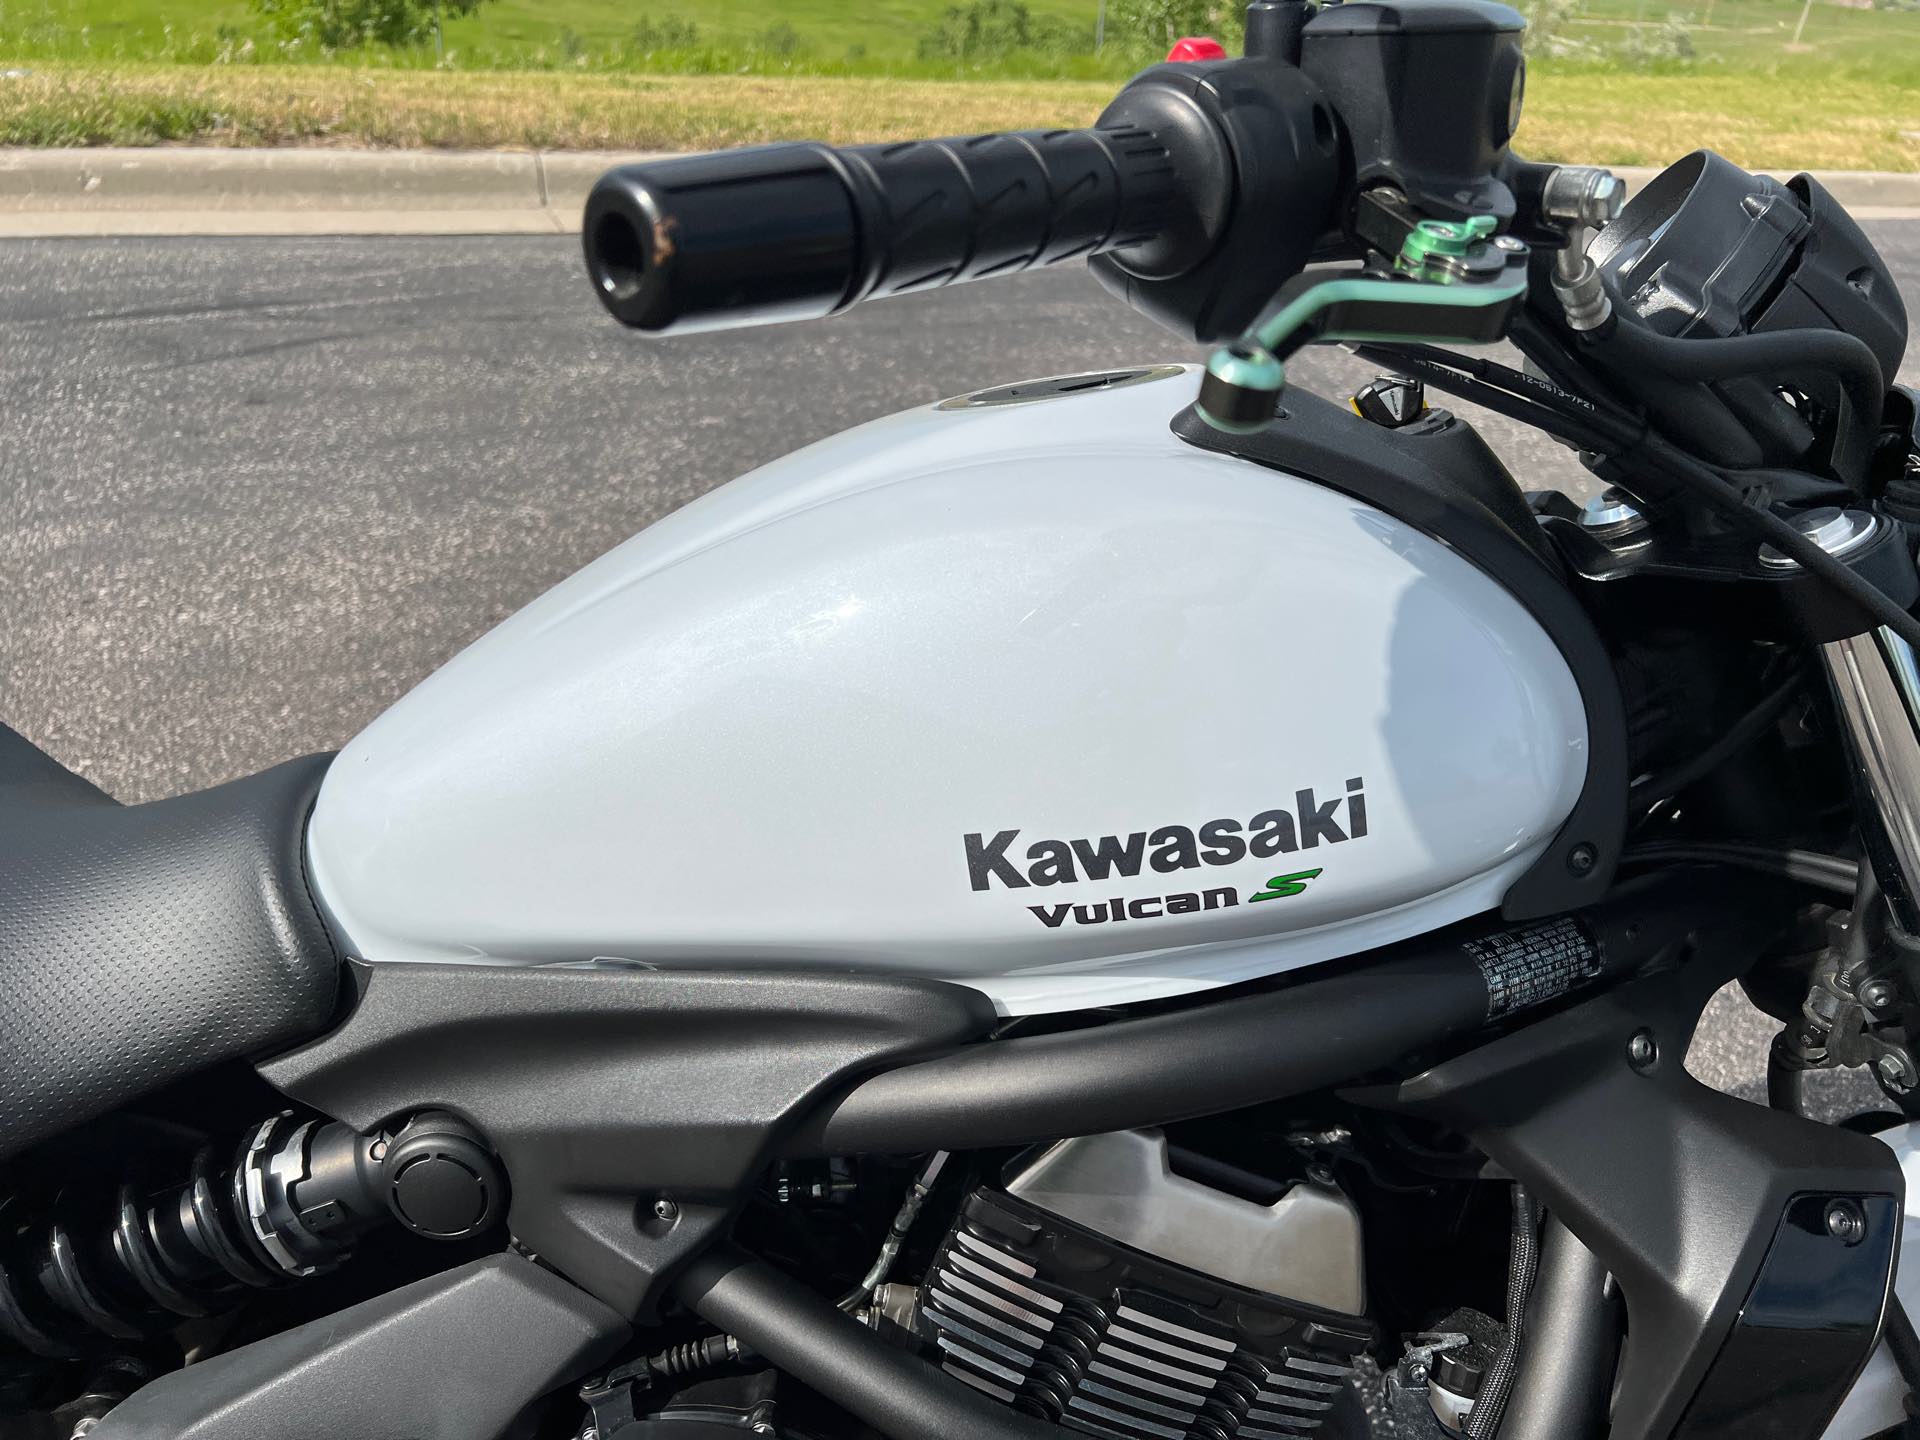 2018 Kawasaki Vulcan S Base at Mount Rushmore Motorsports